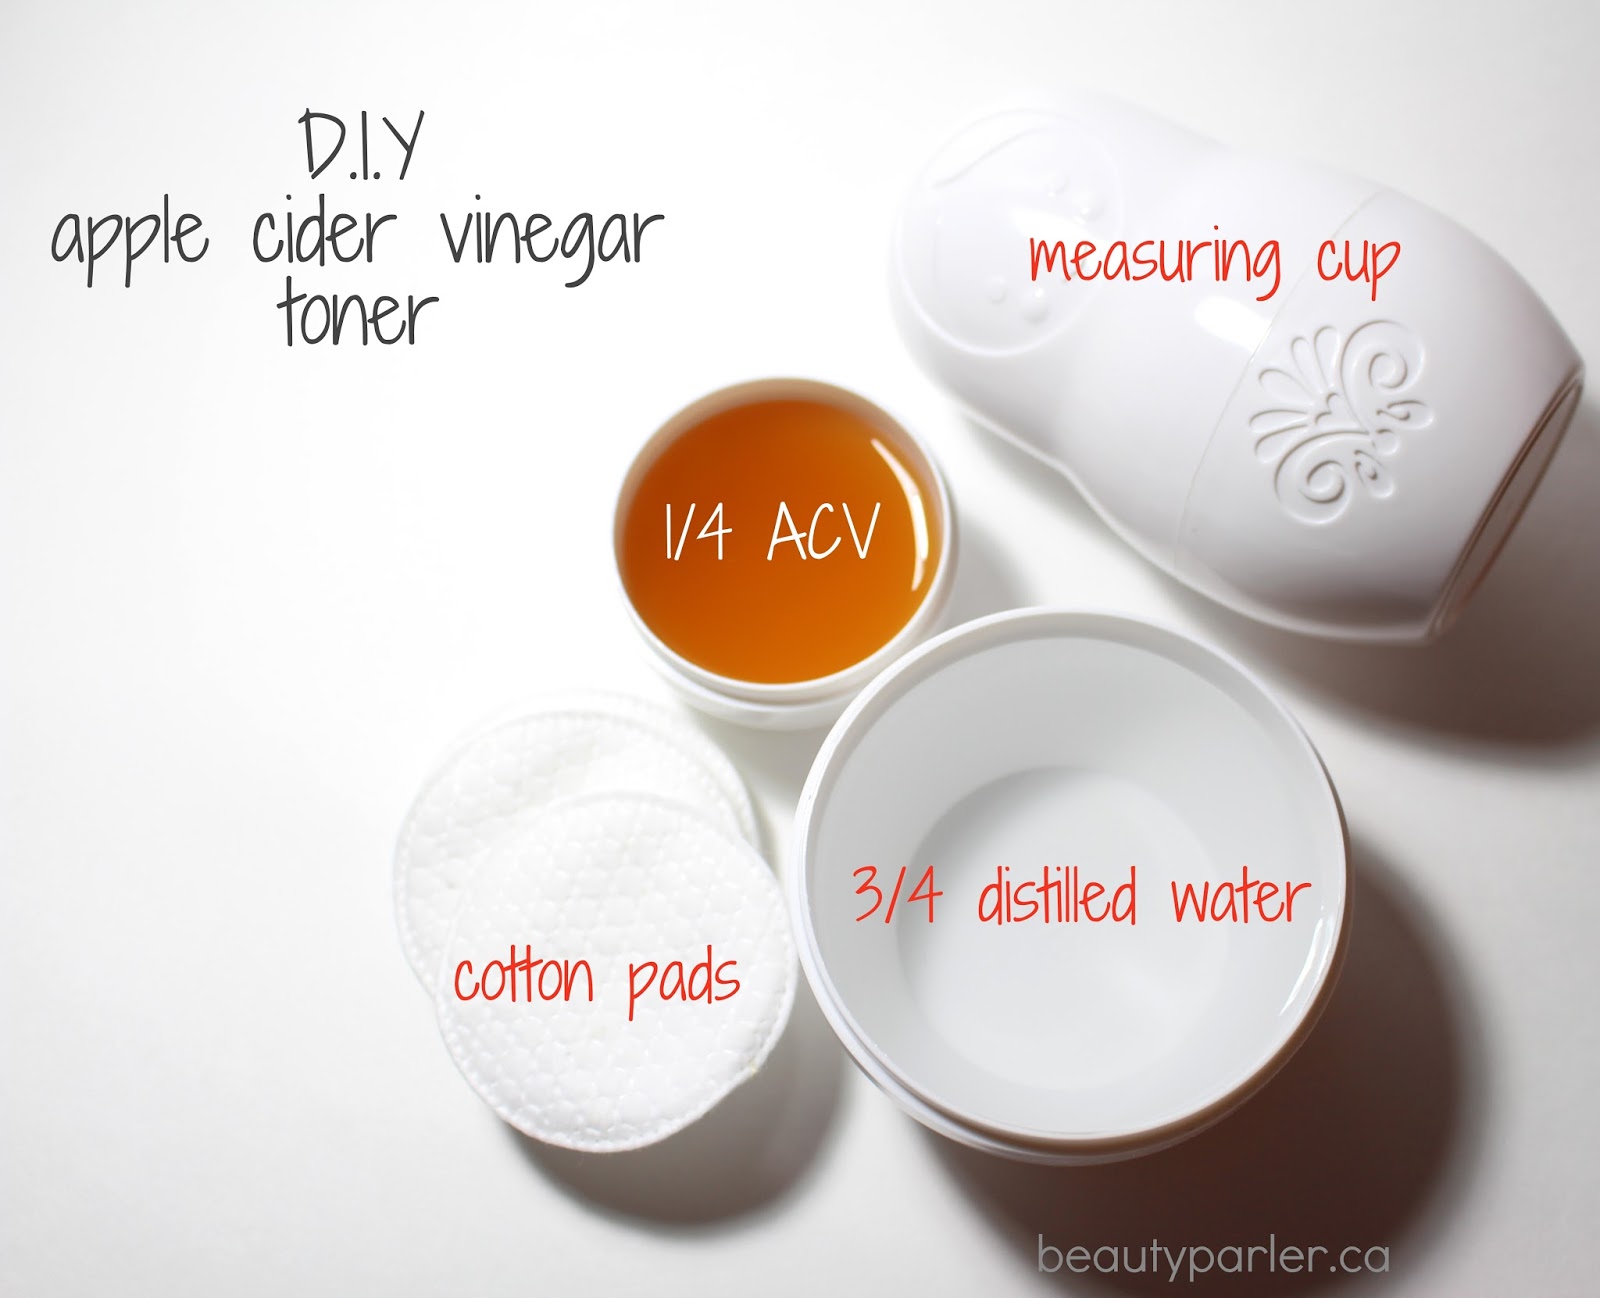 D.I.Y Apple Cider Vinegar toner skincare | Beauty Parler